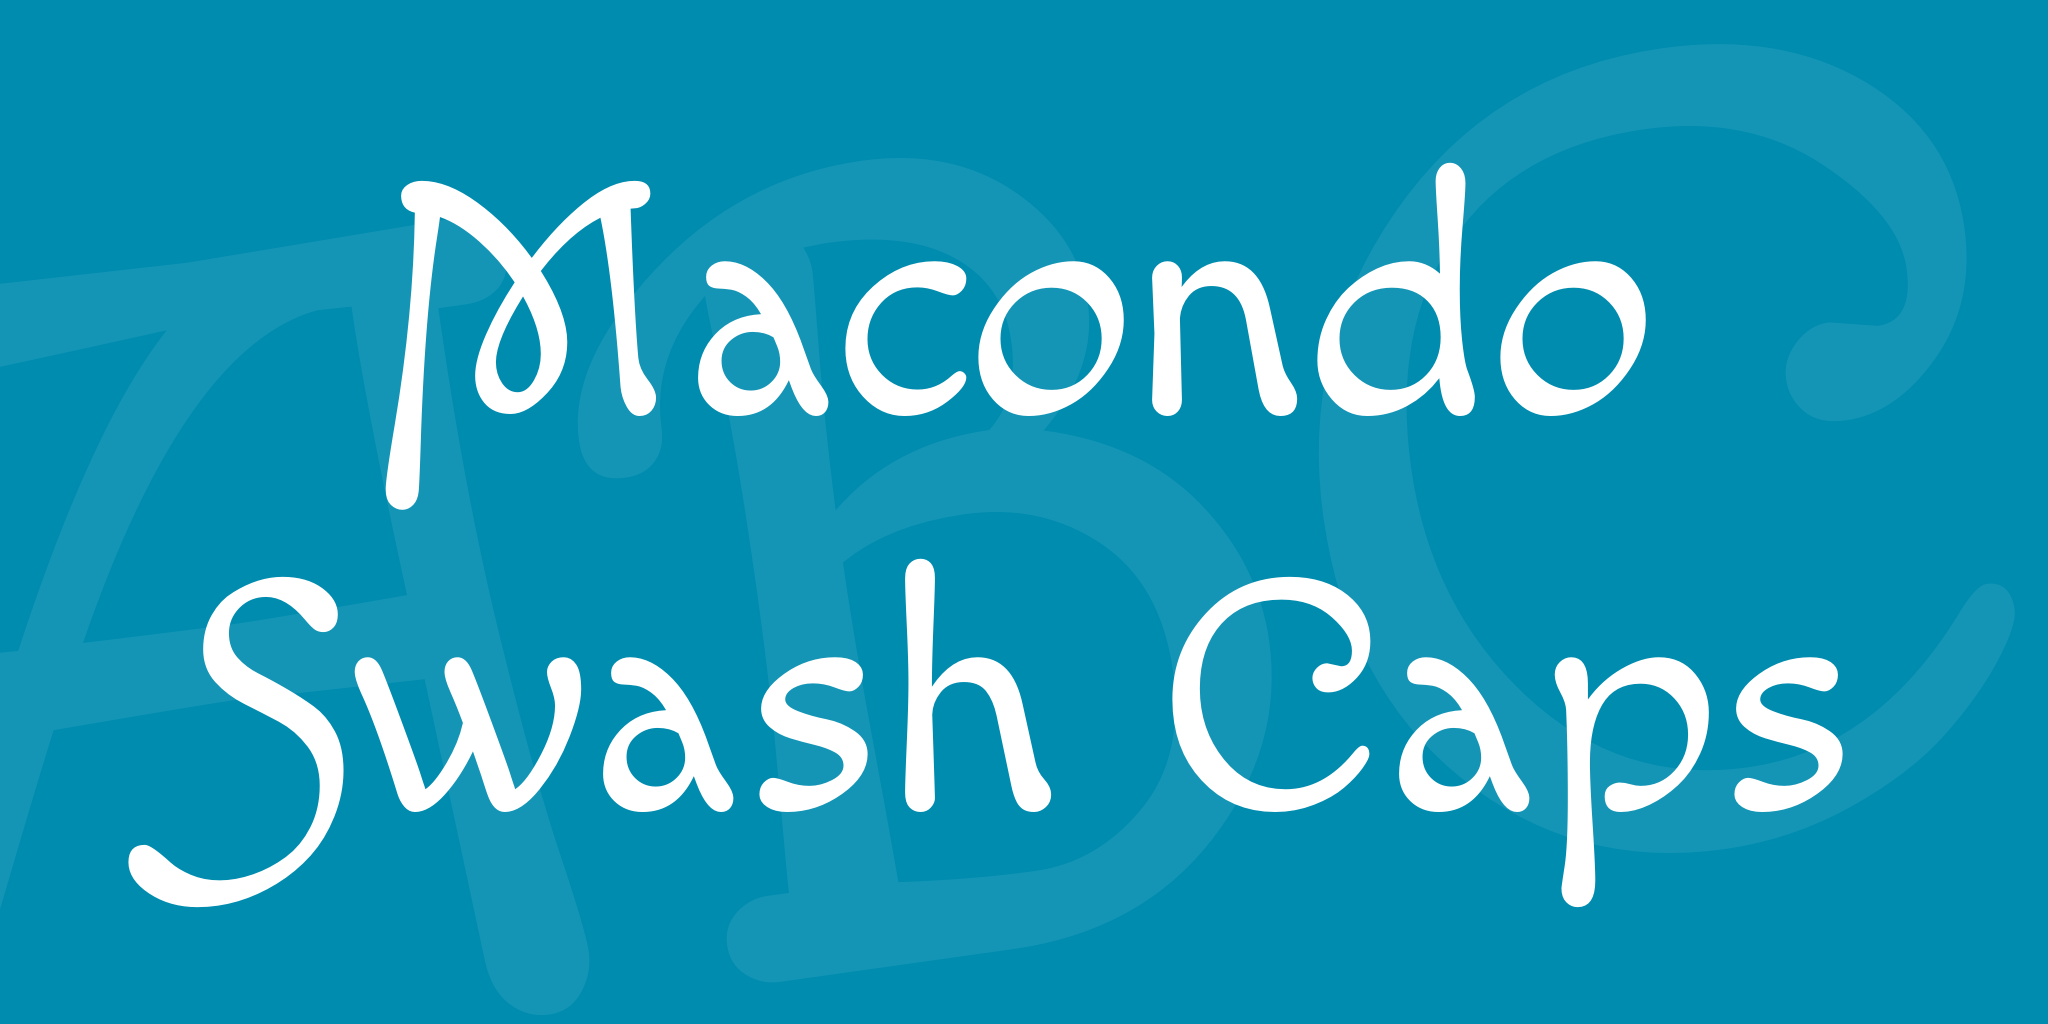 Macondo Swash Caps